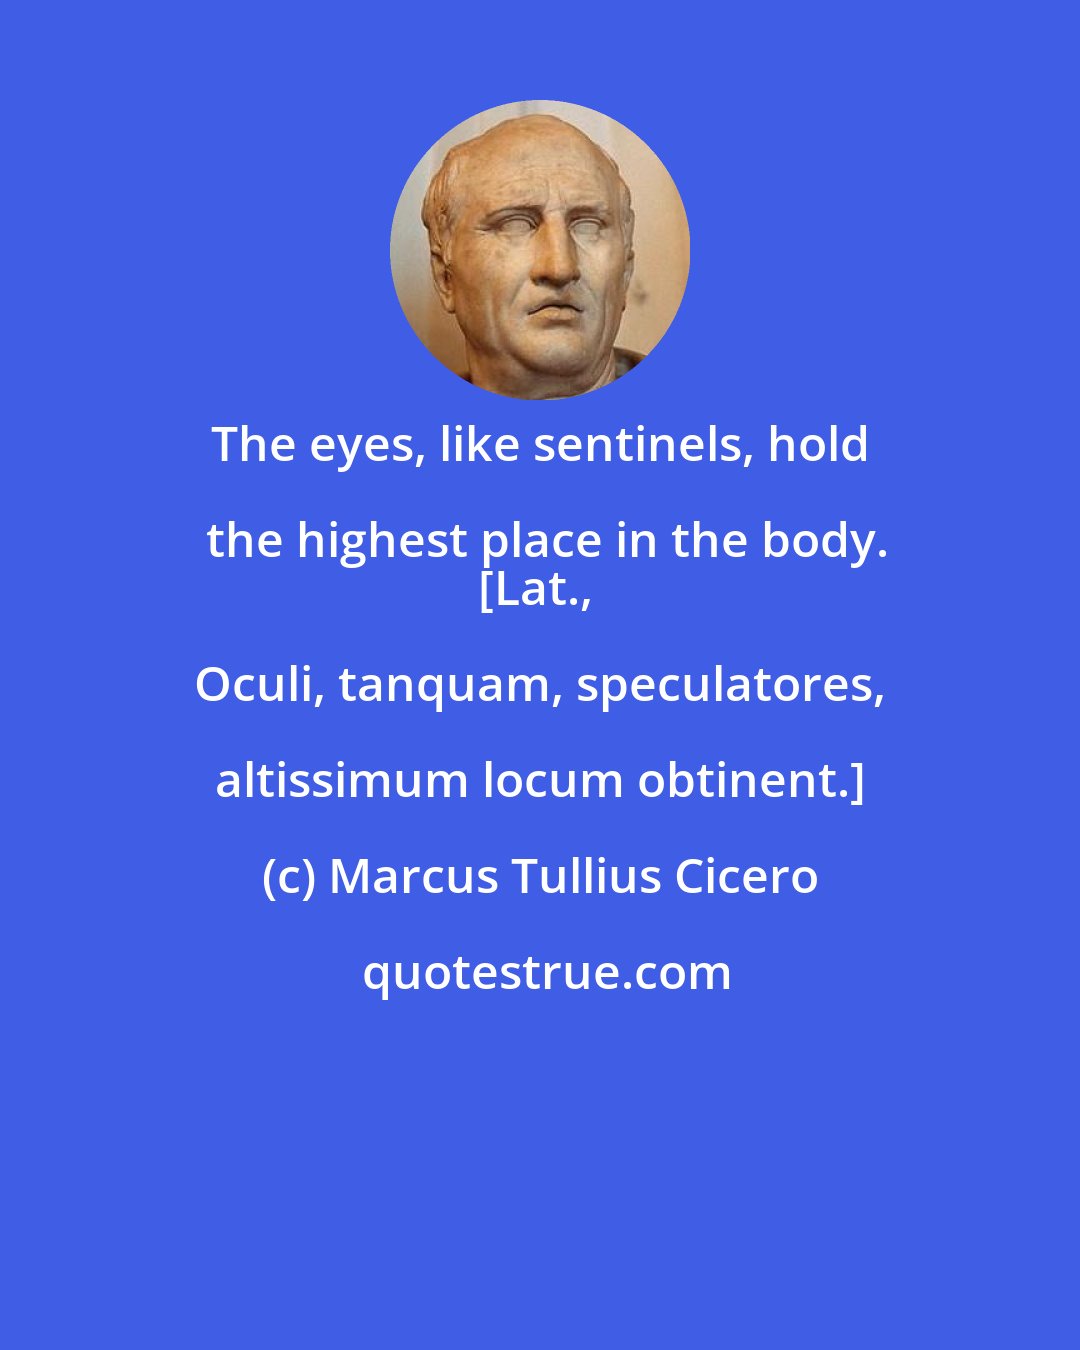 Marcus Tullius Cicero: The eyes, like sentinels, hold the highest place in the body.
[Lat., Oculi, tanquam, speculatores, altissimum locum obtinent.]